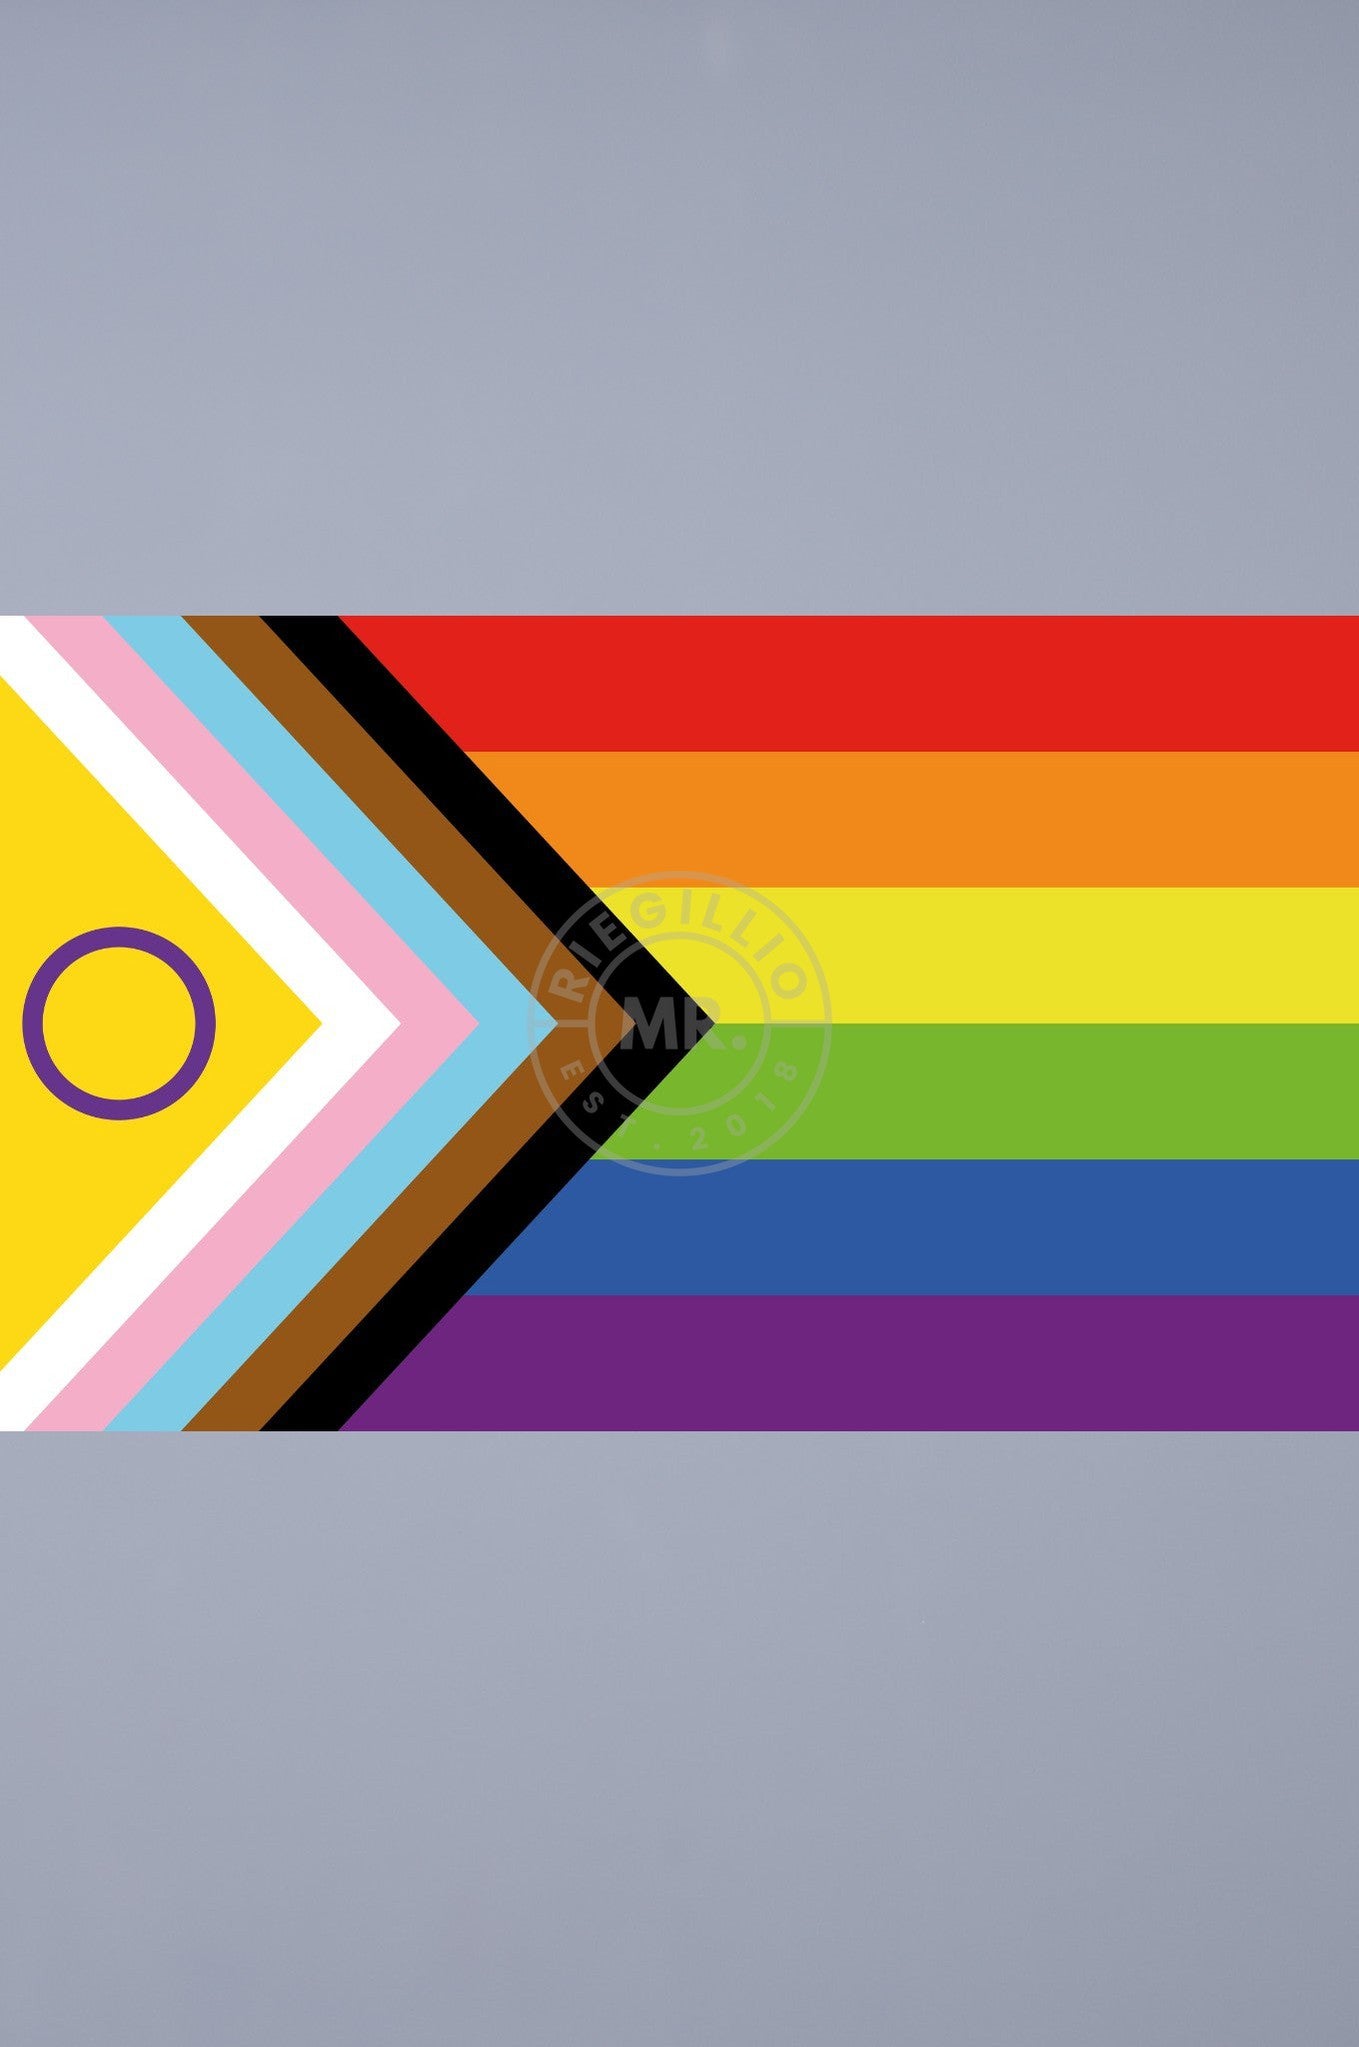 Pride Flag - Intersex-Inclusive - 90 x 150 cm - M at MR. Riegillio